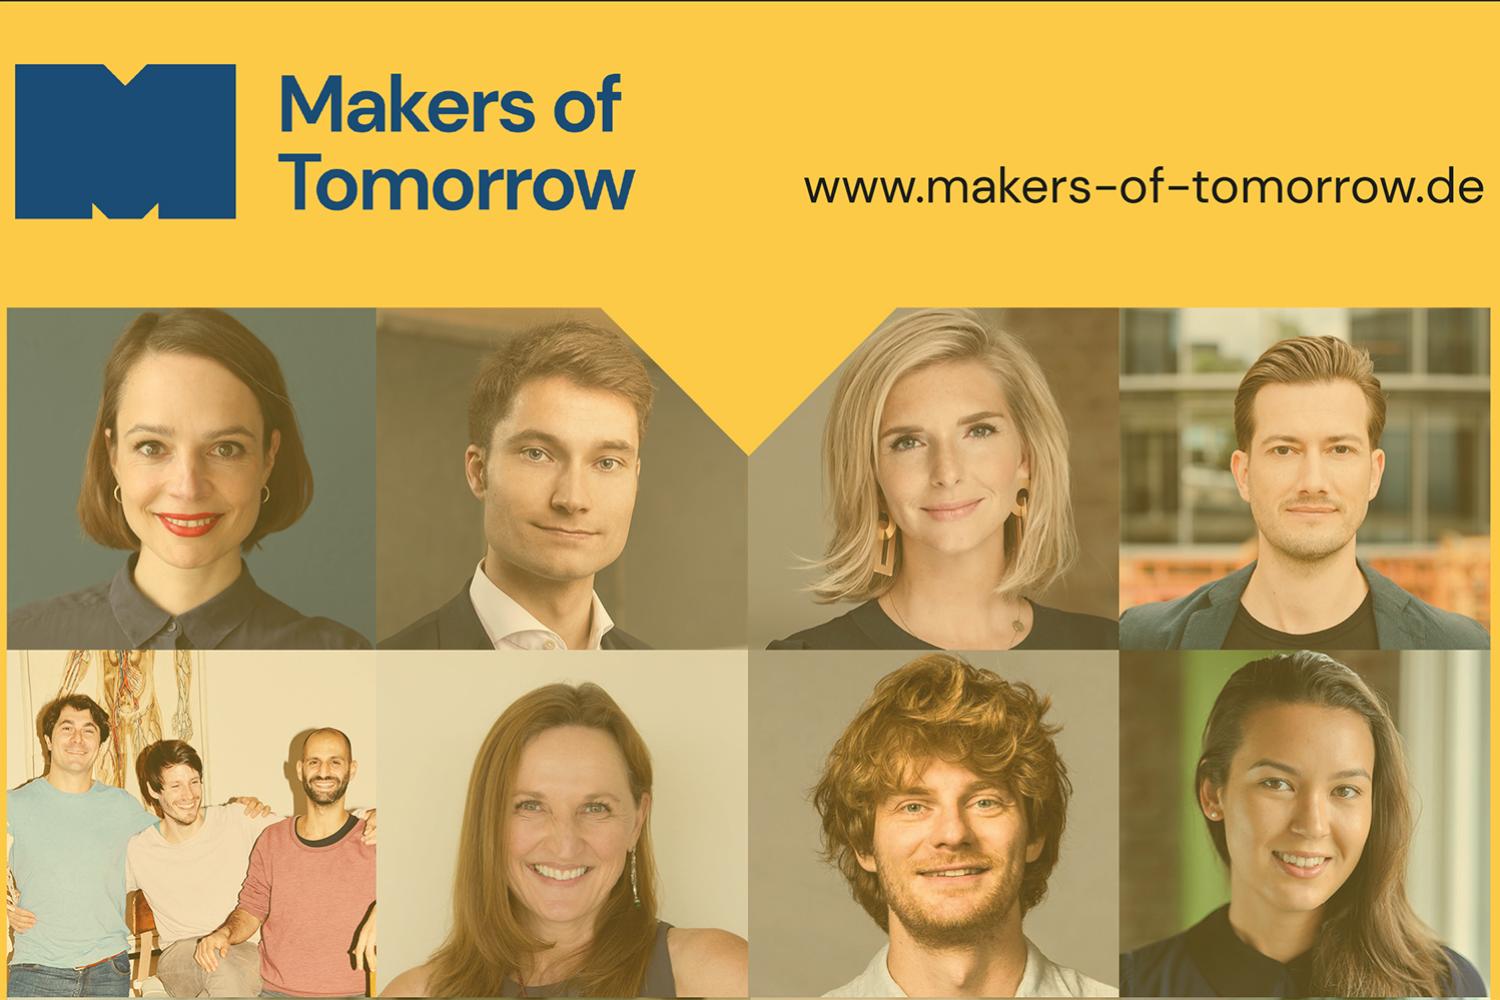 Makers of Tomorrow der Online-Studienkurs für die Macher der Zukunft mit den Gesichtern der Gründerinnnen und Gründer, die bei dem Projekt mitmachen.